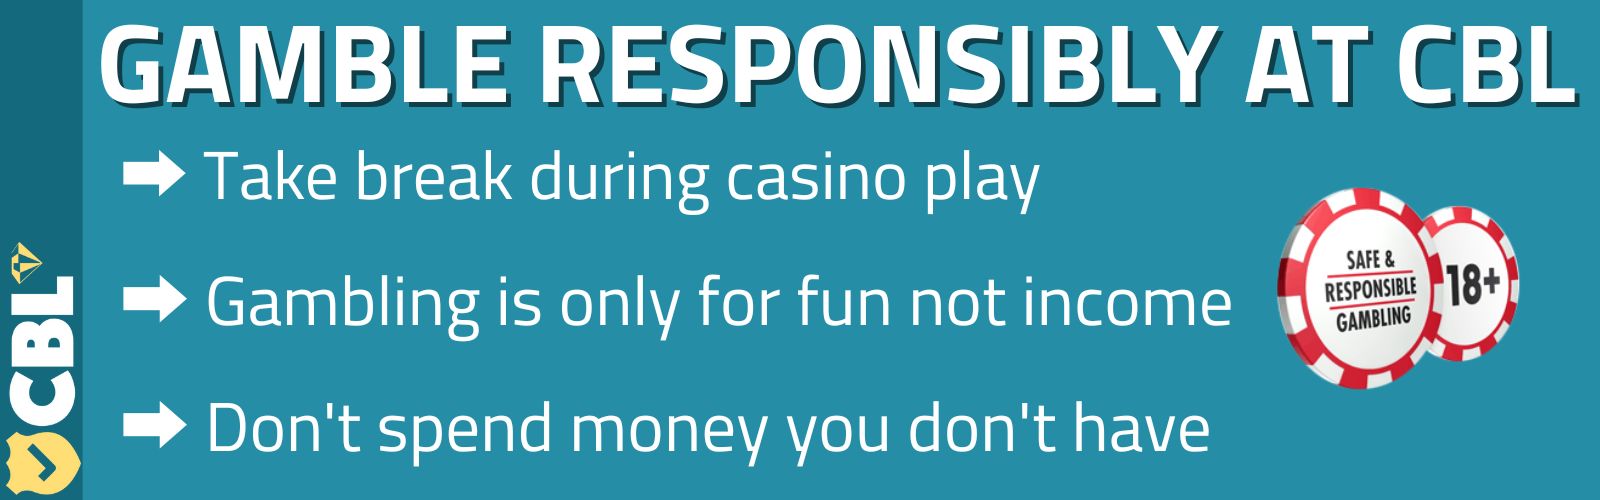 Responsible Gambling India